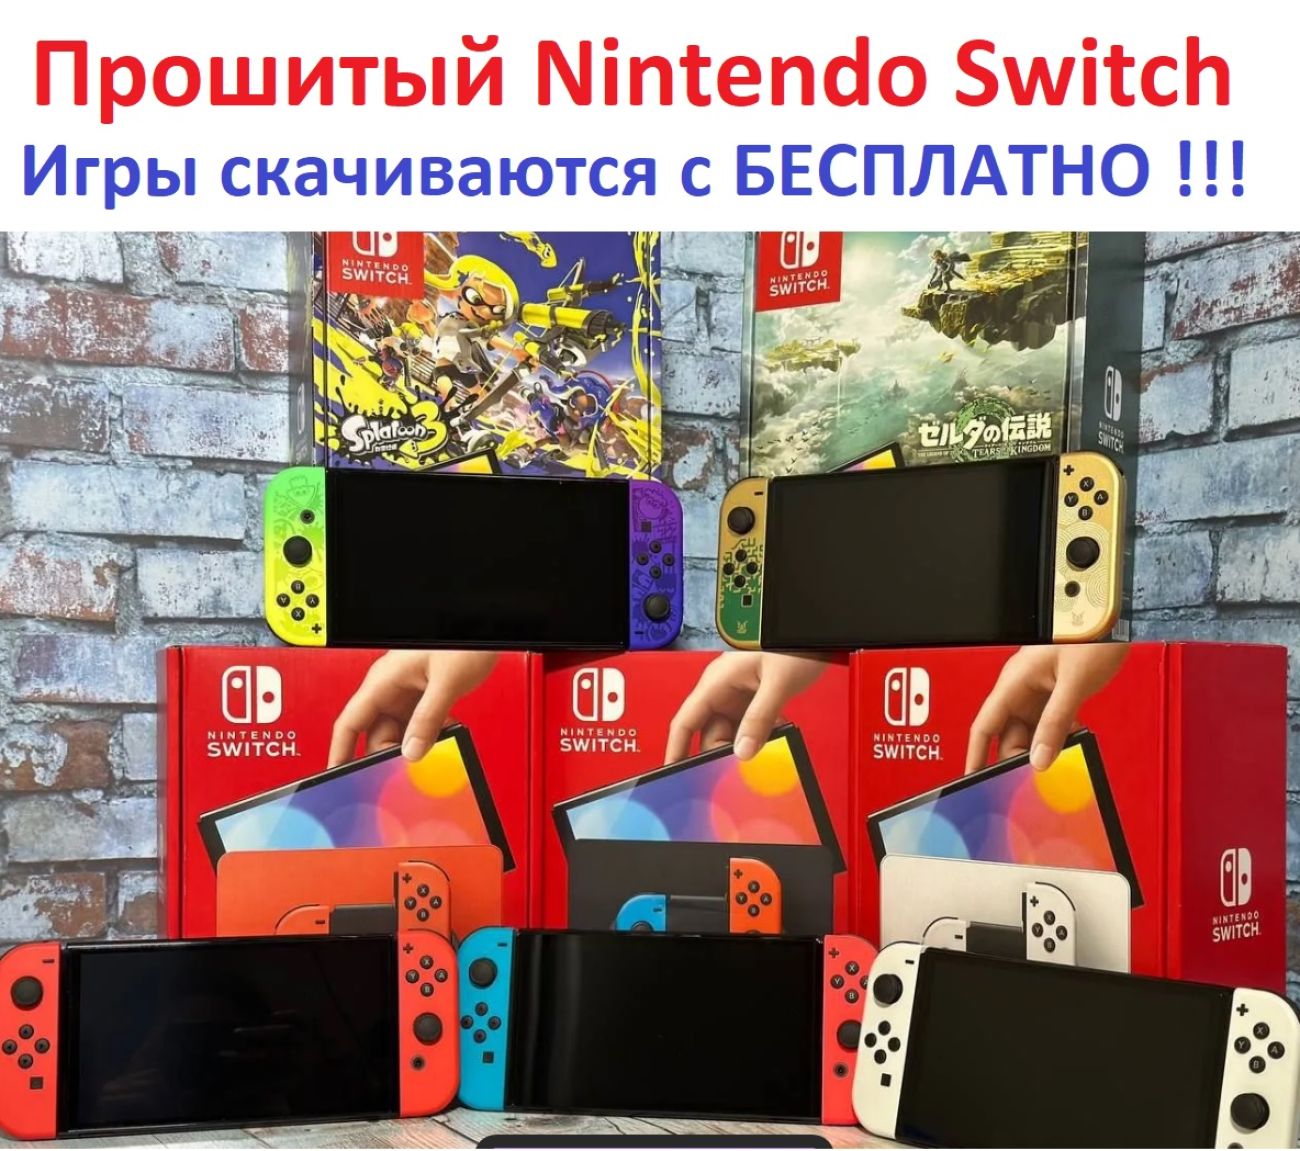 Новинка в продаже - Прошитый Nintendo Switch OLED с чипом / Игровая консоль Nintendo Switch OLED Прошитая !!!